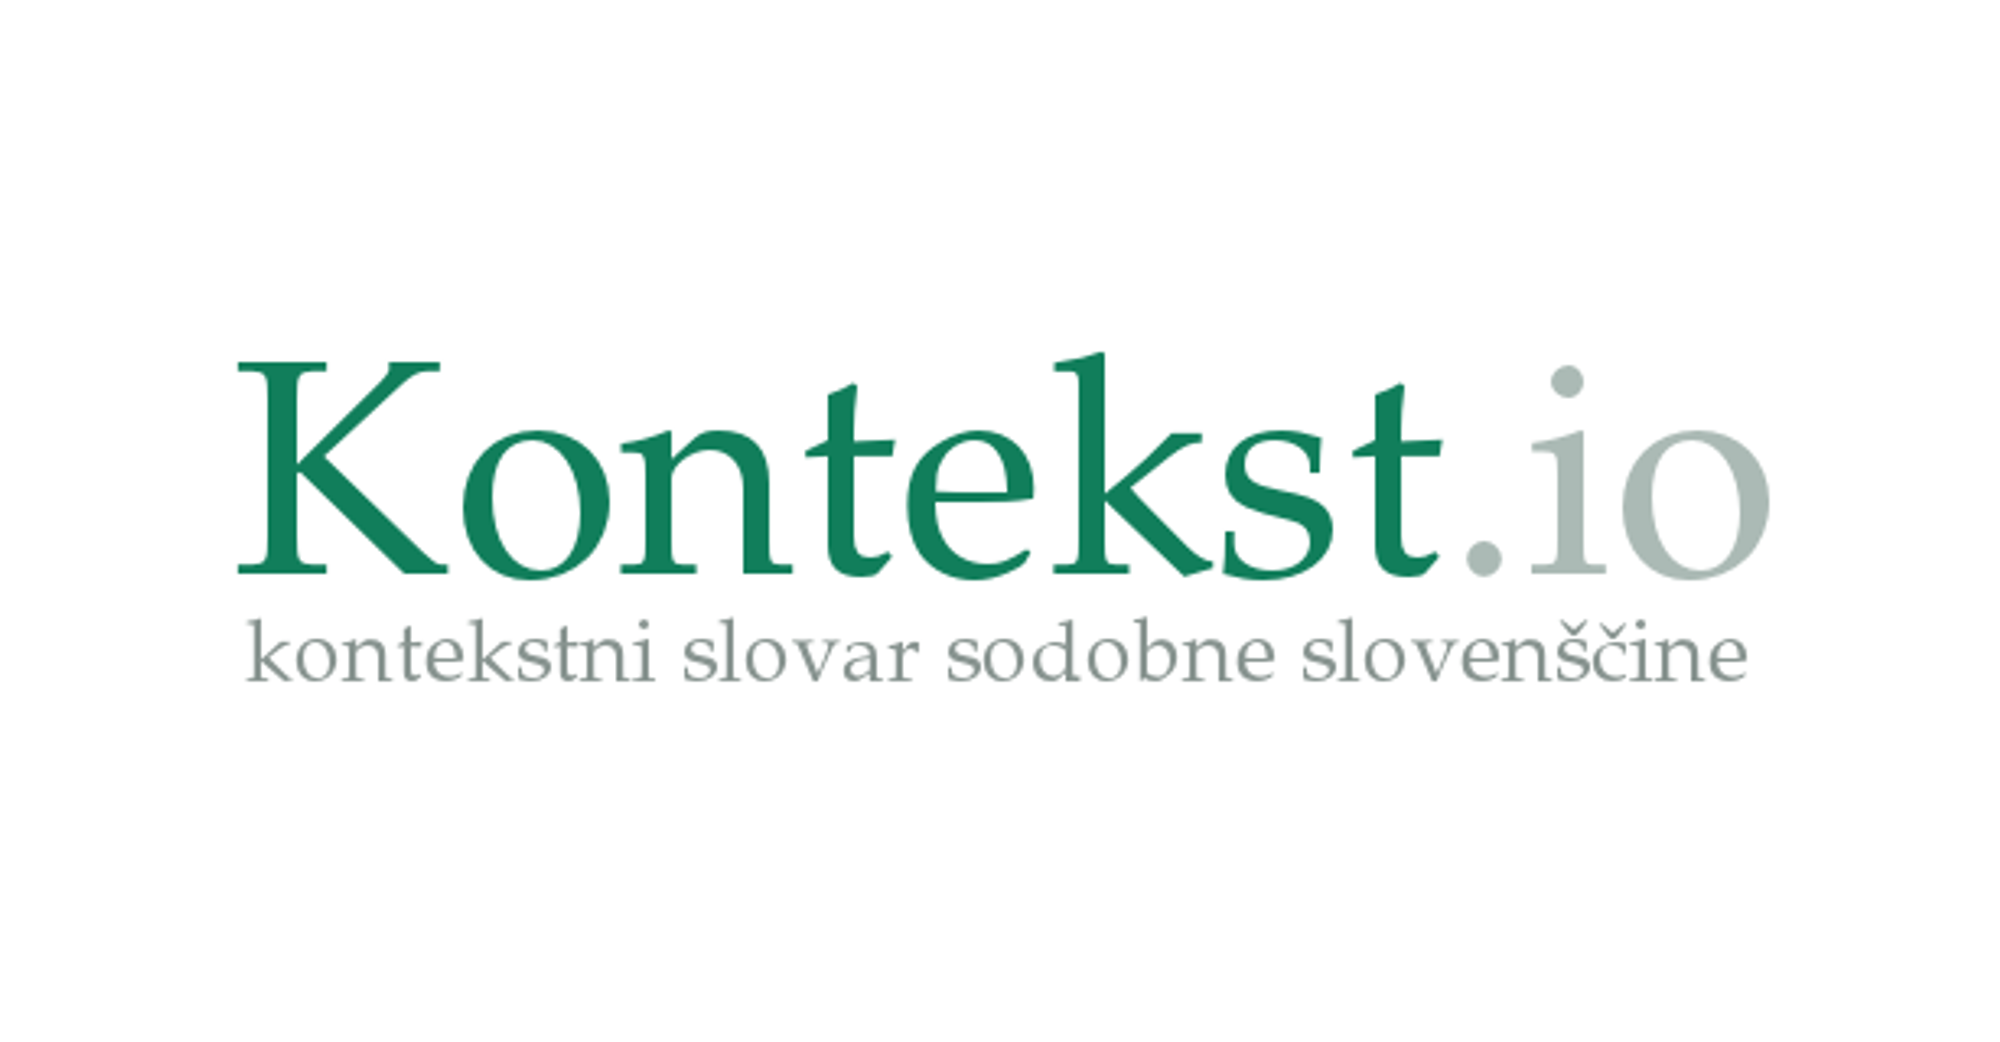 Kontekst.io | tražilica kontekstno sličnih riječi u savremenom hrvatskom, slovenskom i srpskom jeziku